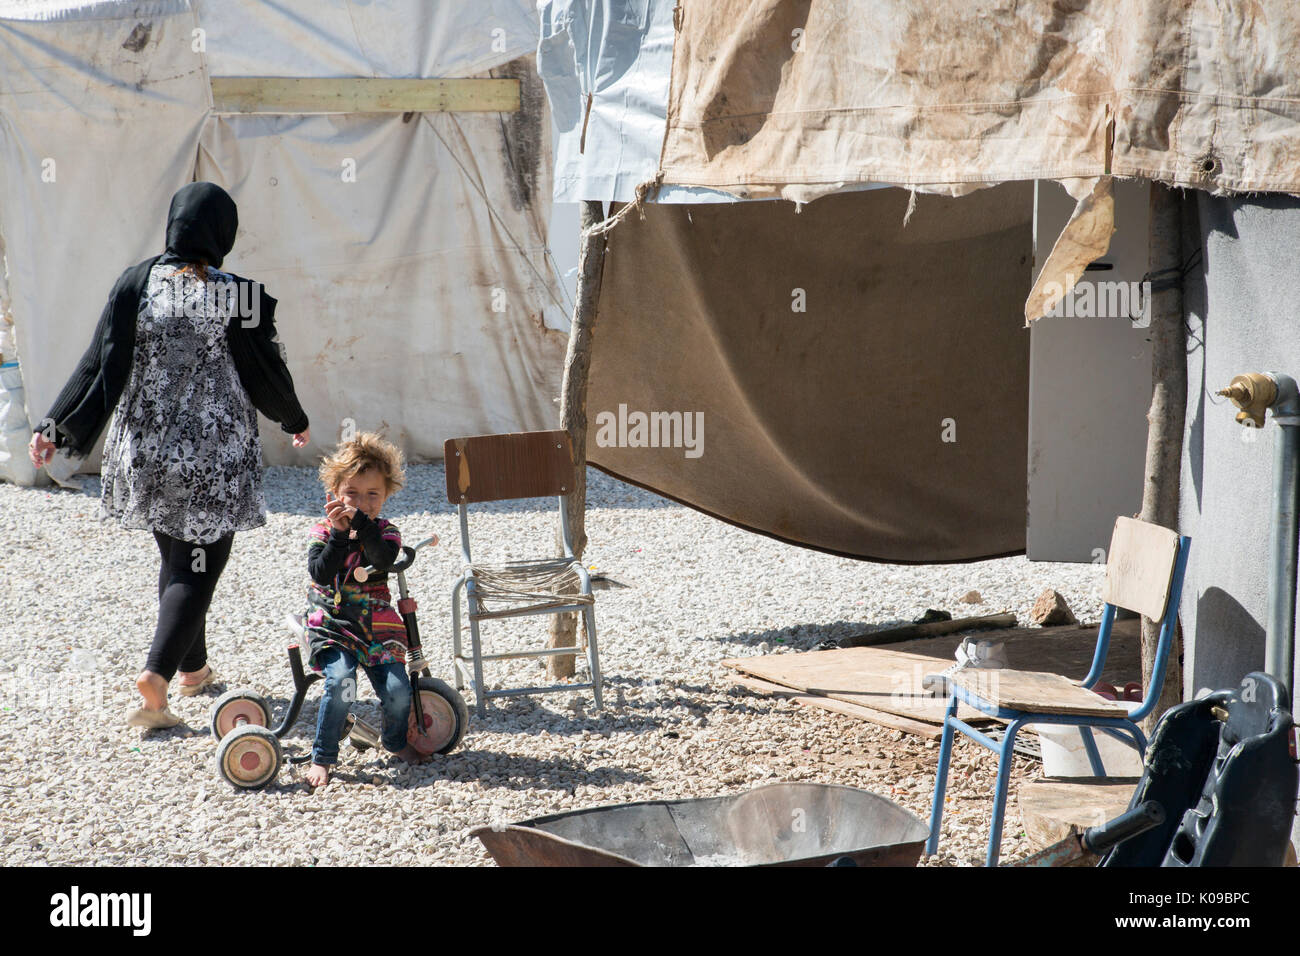 Am Ritsona camp in Griechenland für syrische Flüchtlinge, ein Barfuß Kind auf einem Dreirad sieht in die Kamera wie eine erwachsene Frau (zurück in die Kamera) geht weg. Stockfoto